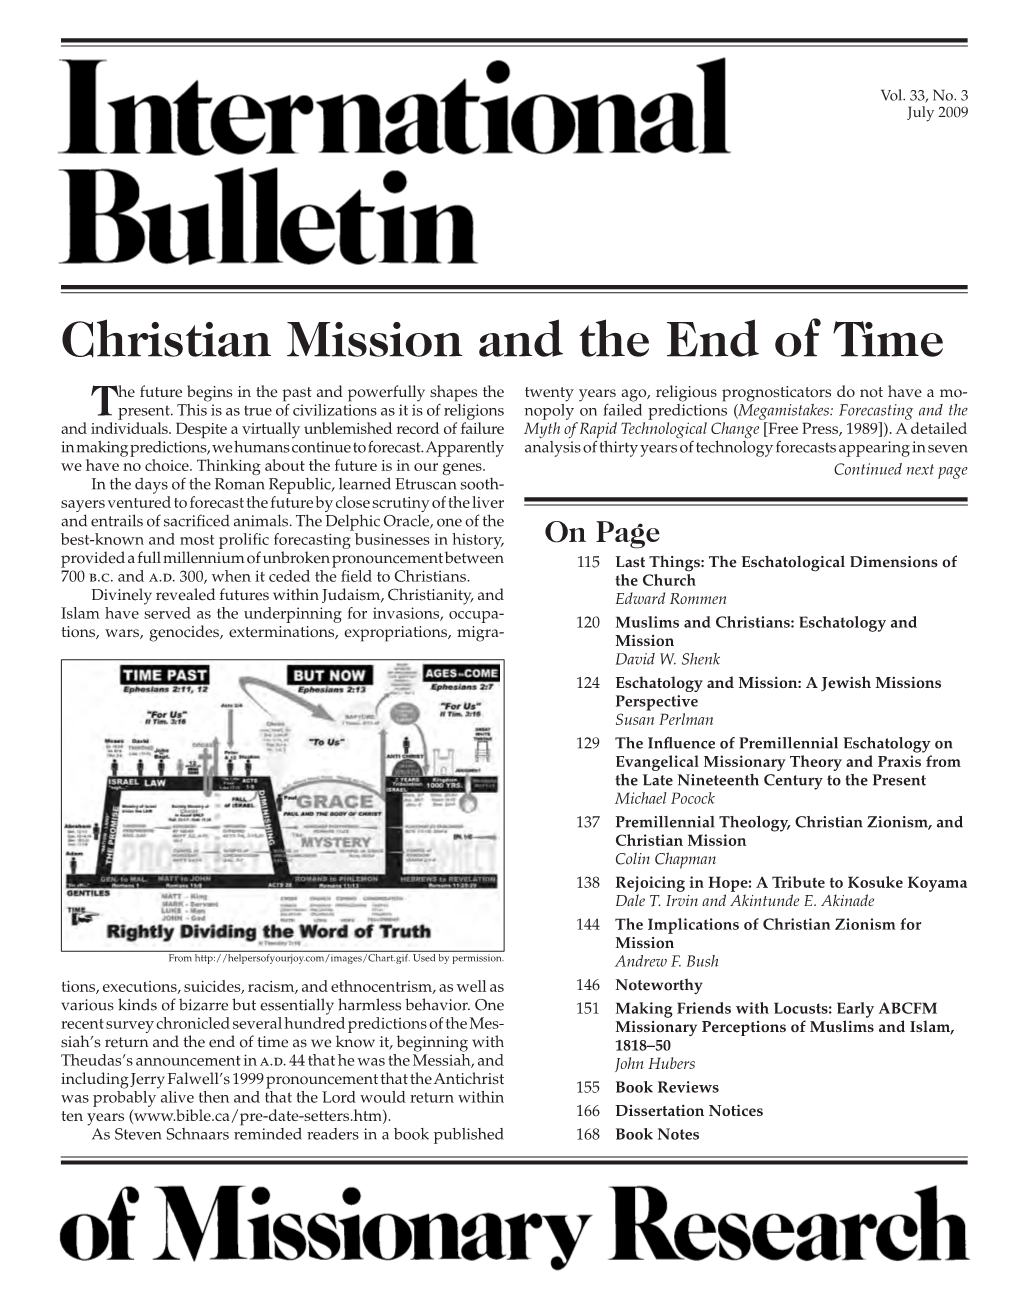 FULL ISSUE (56 Pp., 4.7 MB PDF)